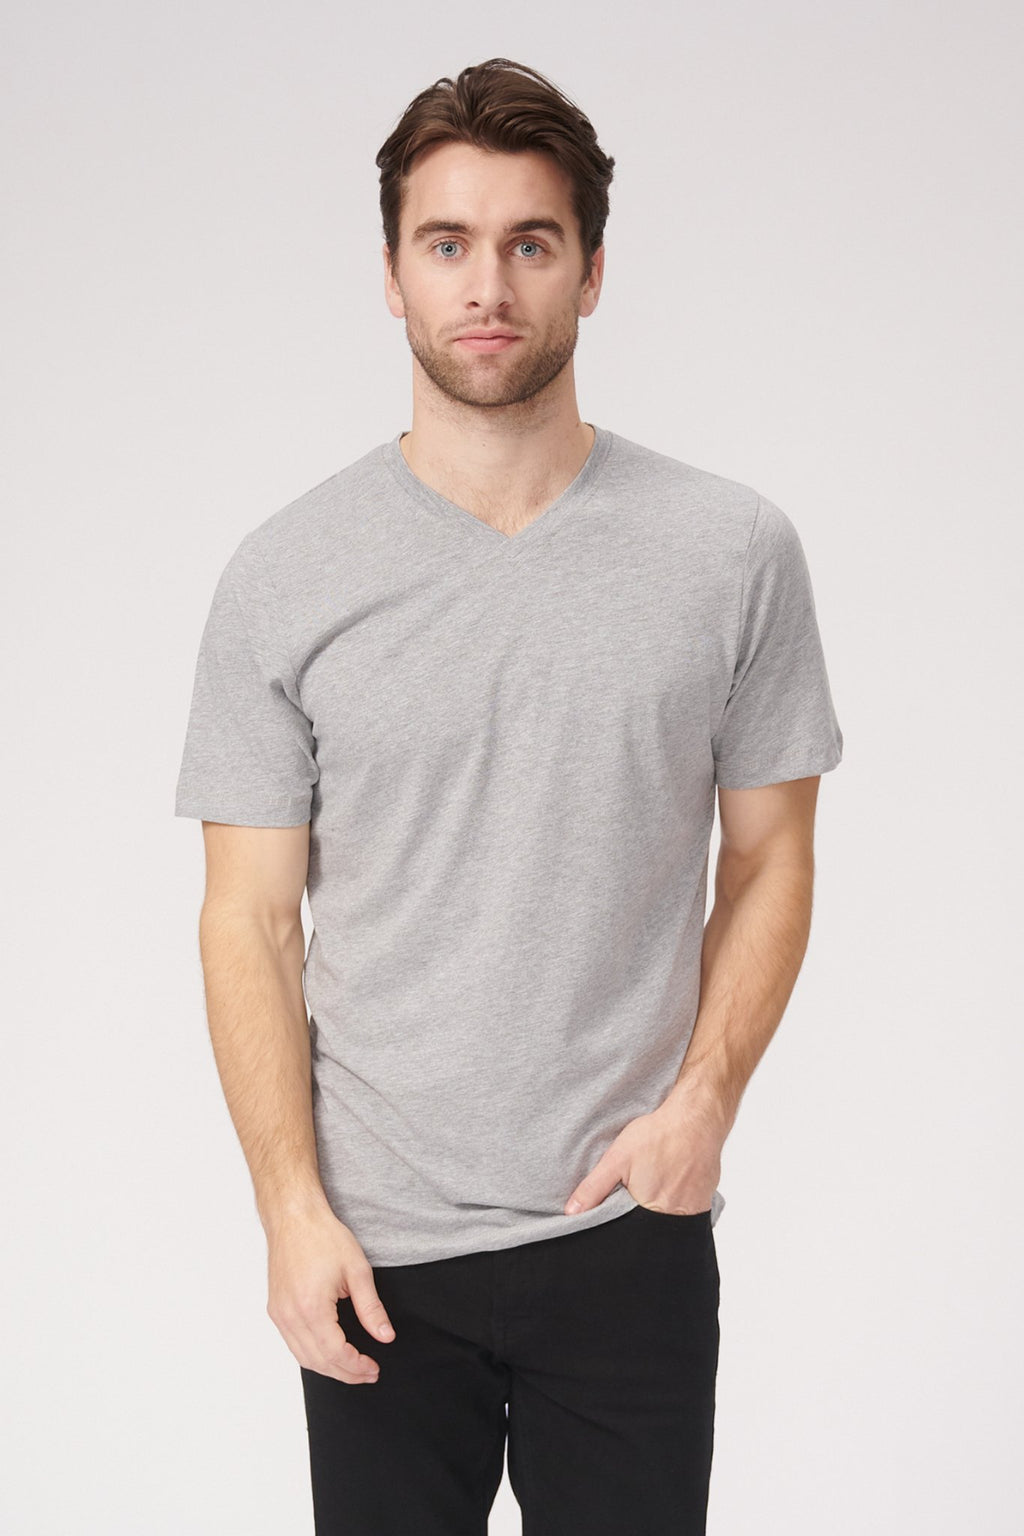 Camiseta básica de Vneck - Oxford Gray